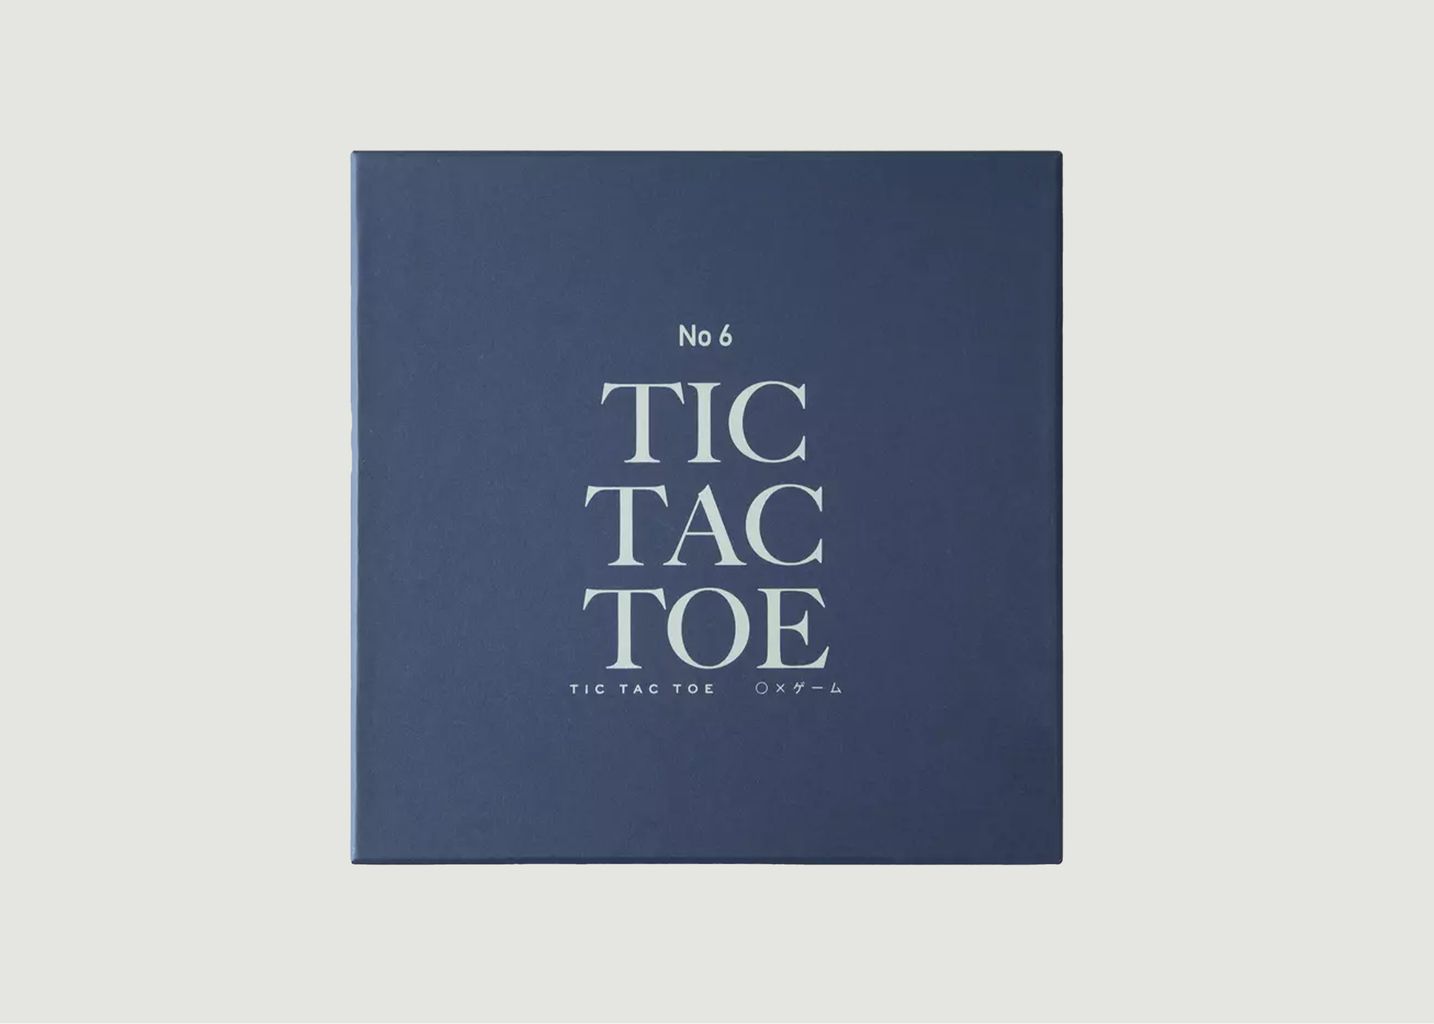 Tic-tac-toe game - Printworks Sweden